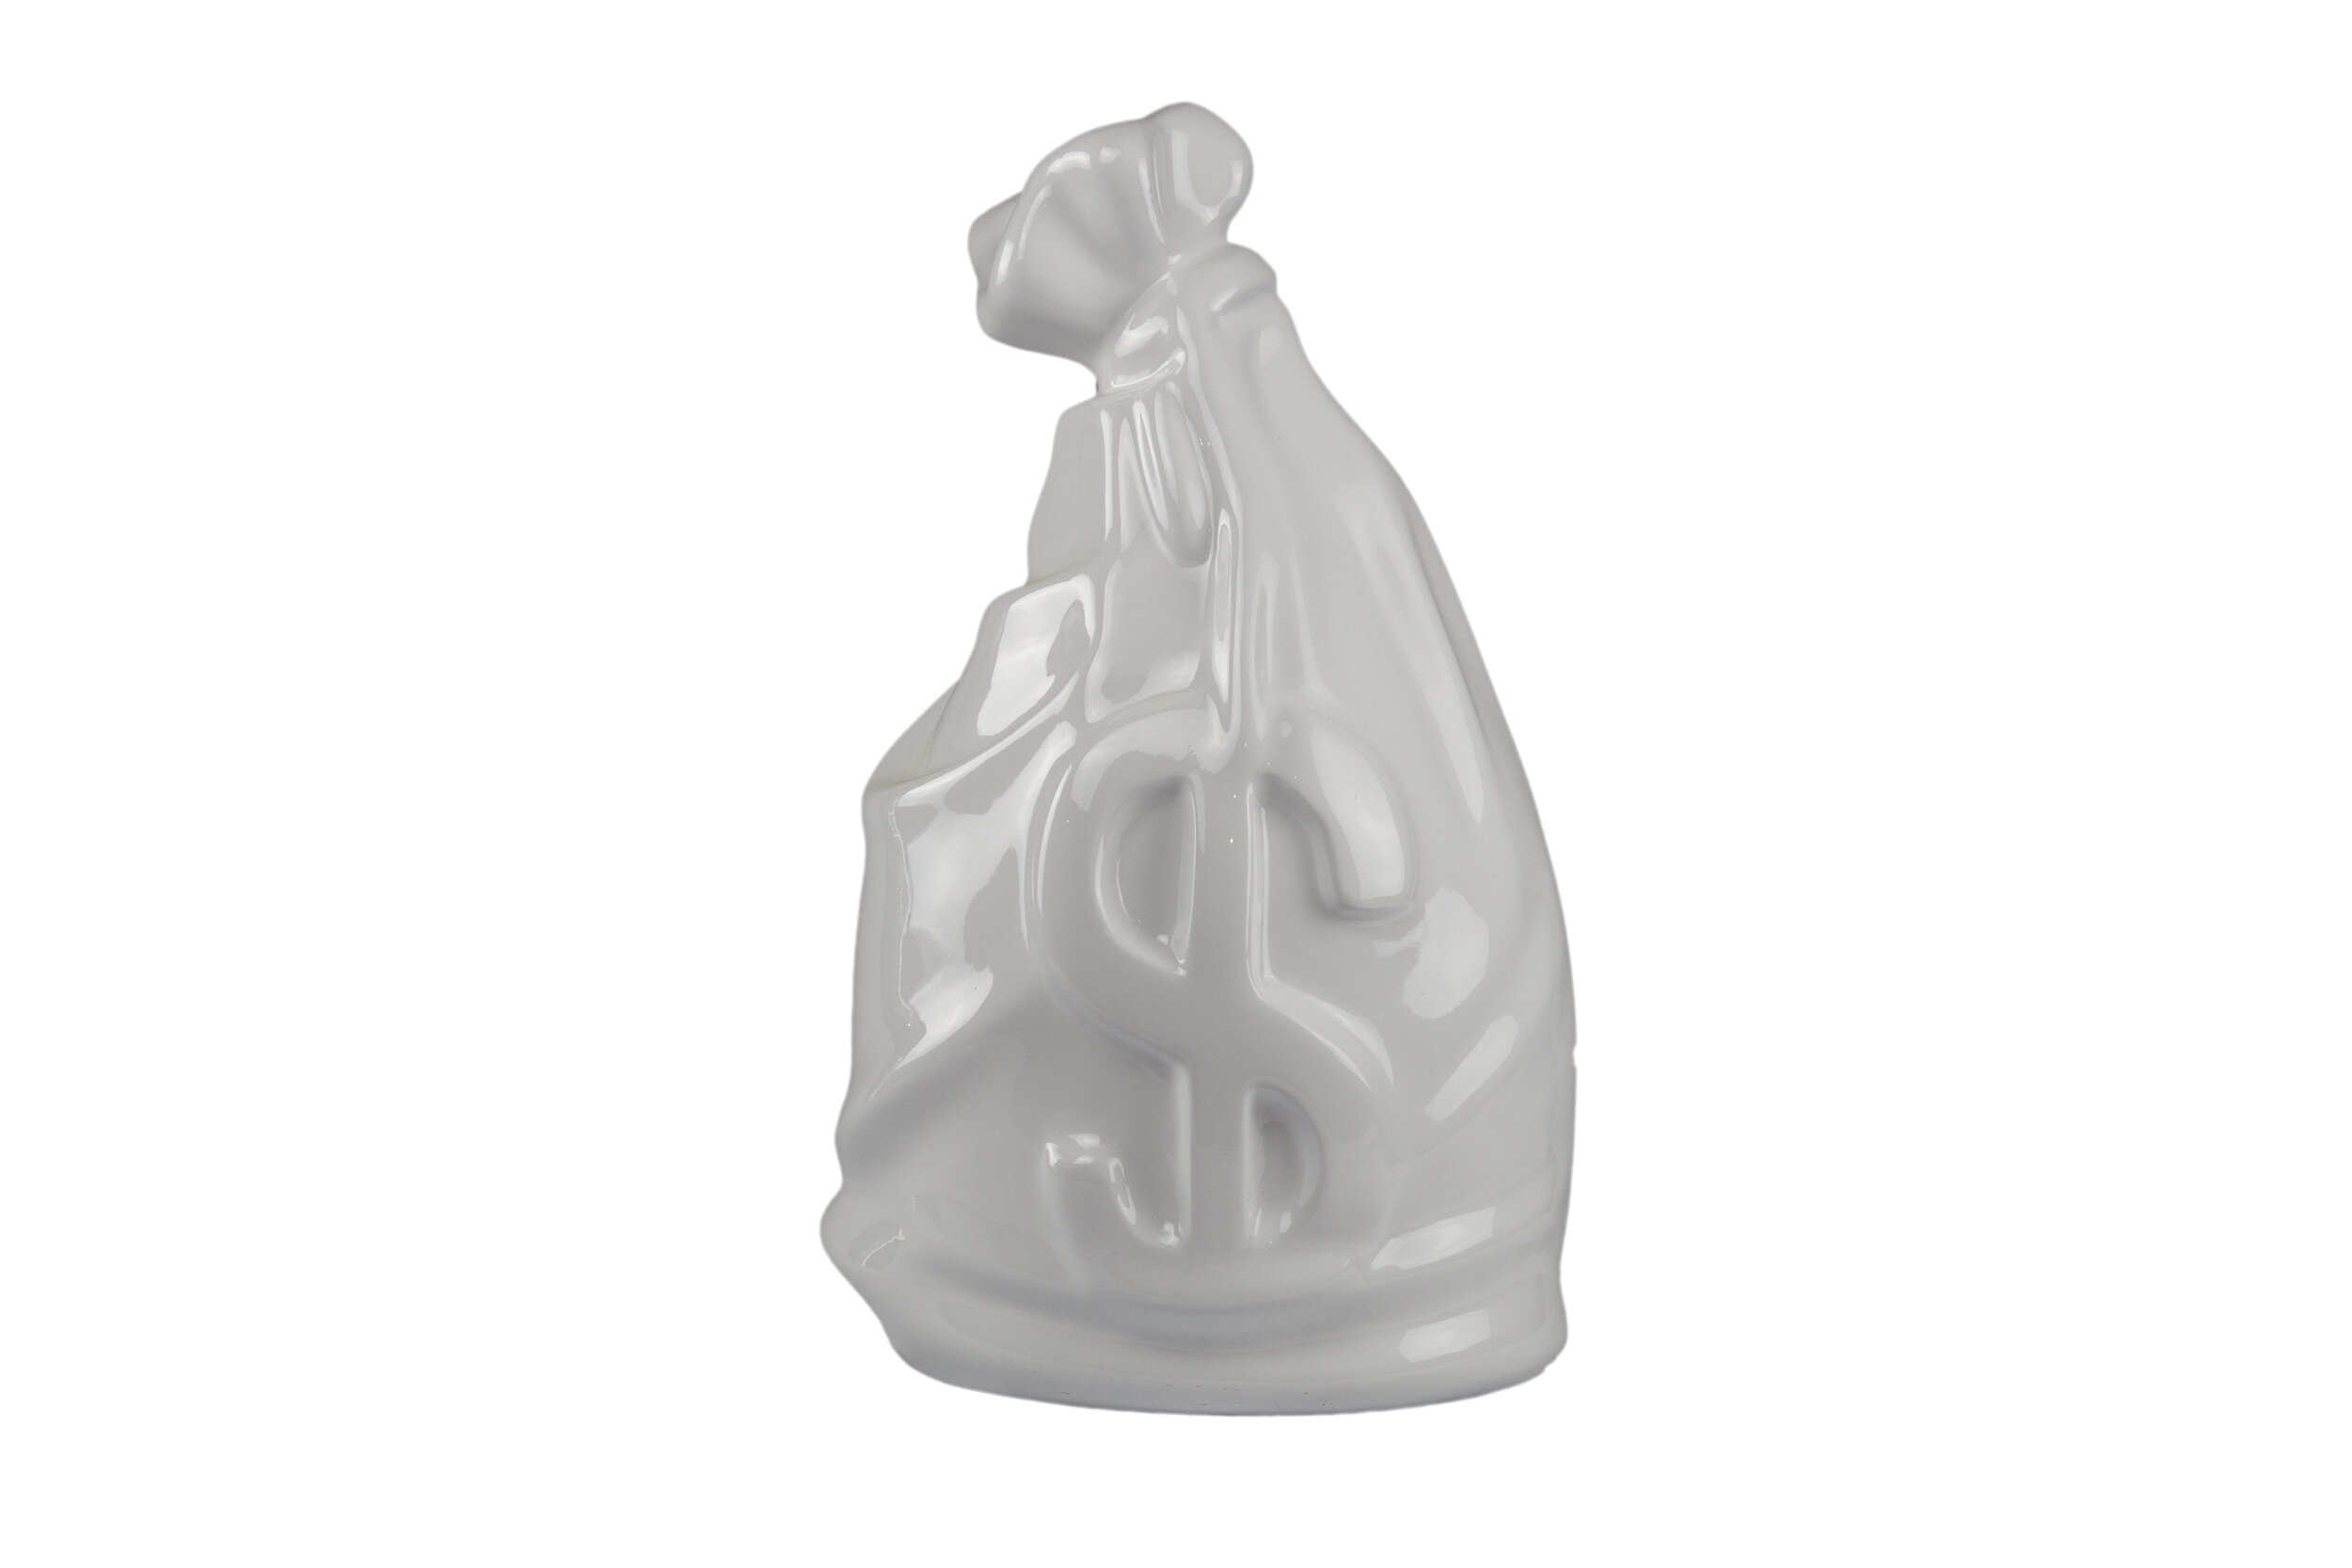 moneybag-sculpture-white-2020.jpg